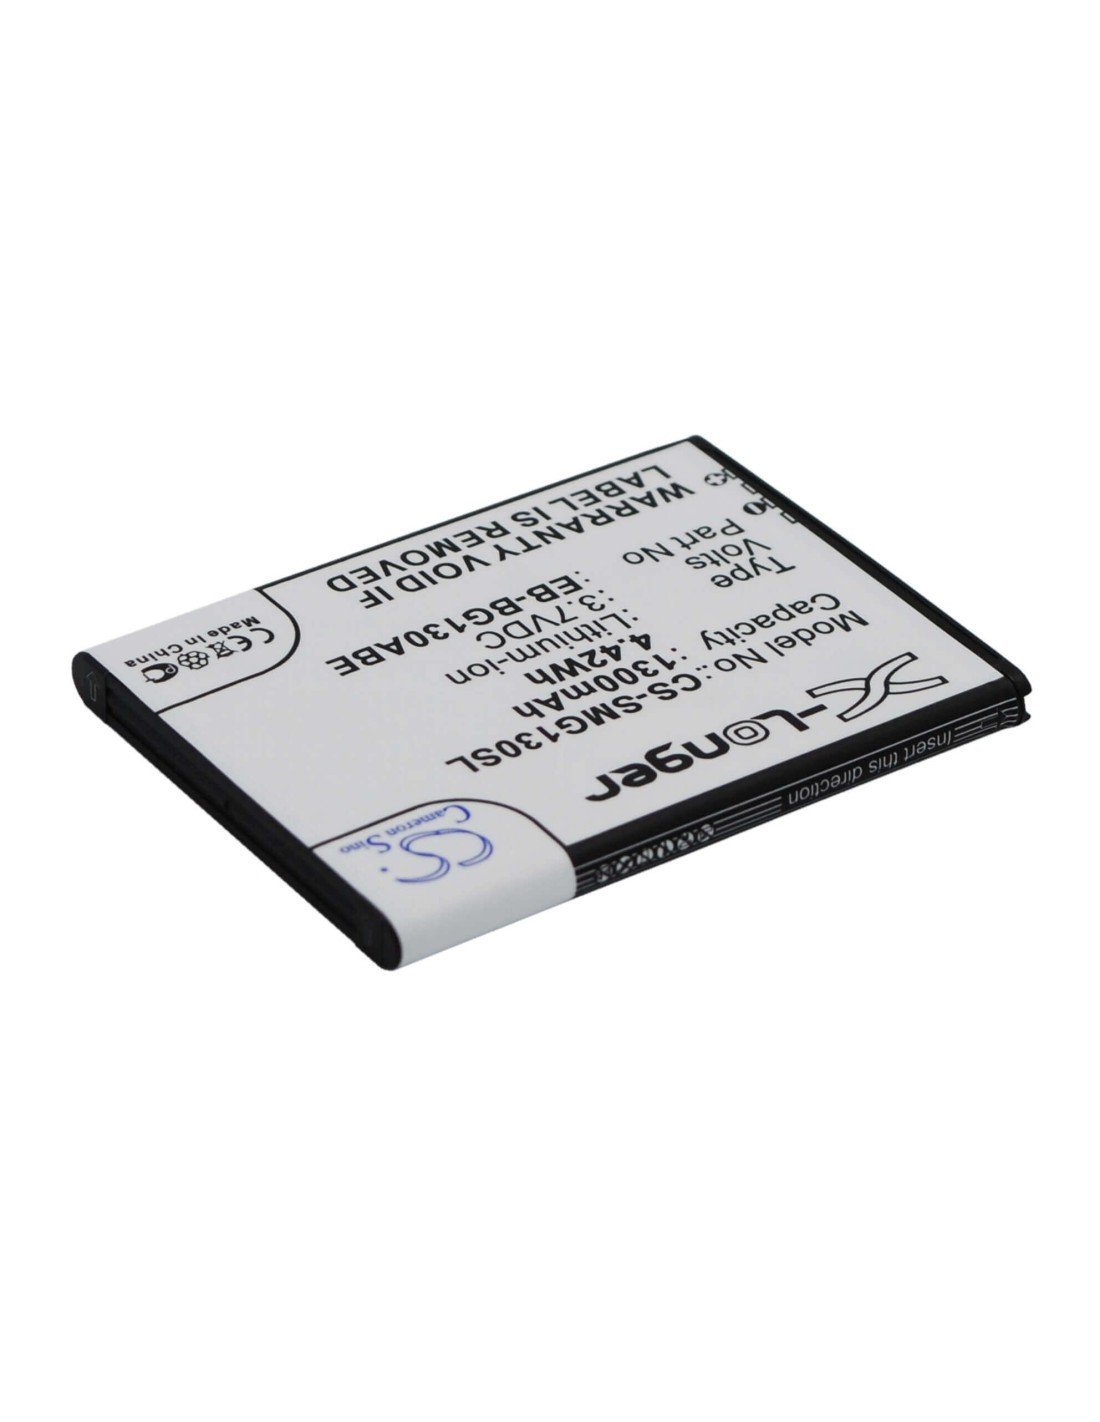 Battery for Samsung SM-G130, SM-G130E, SM-G130H 3.7V, 1300mAh - 4.81Wh